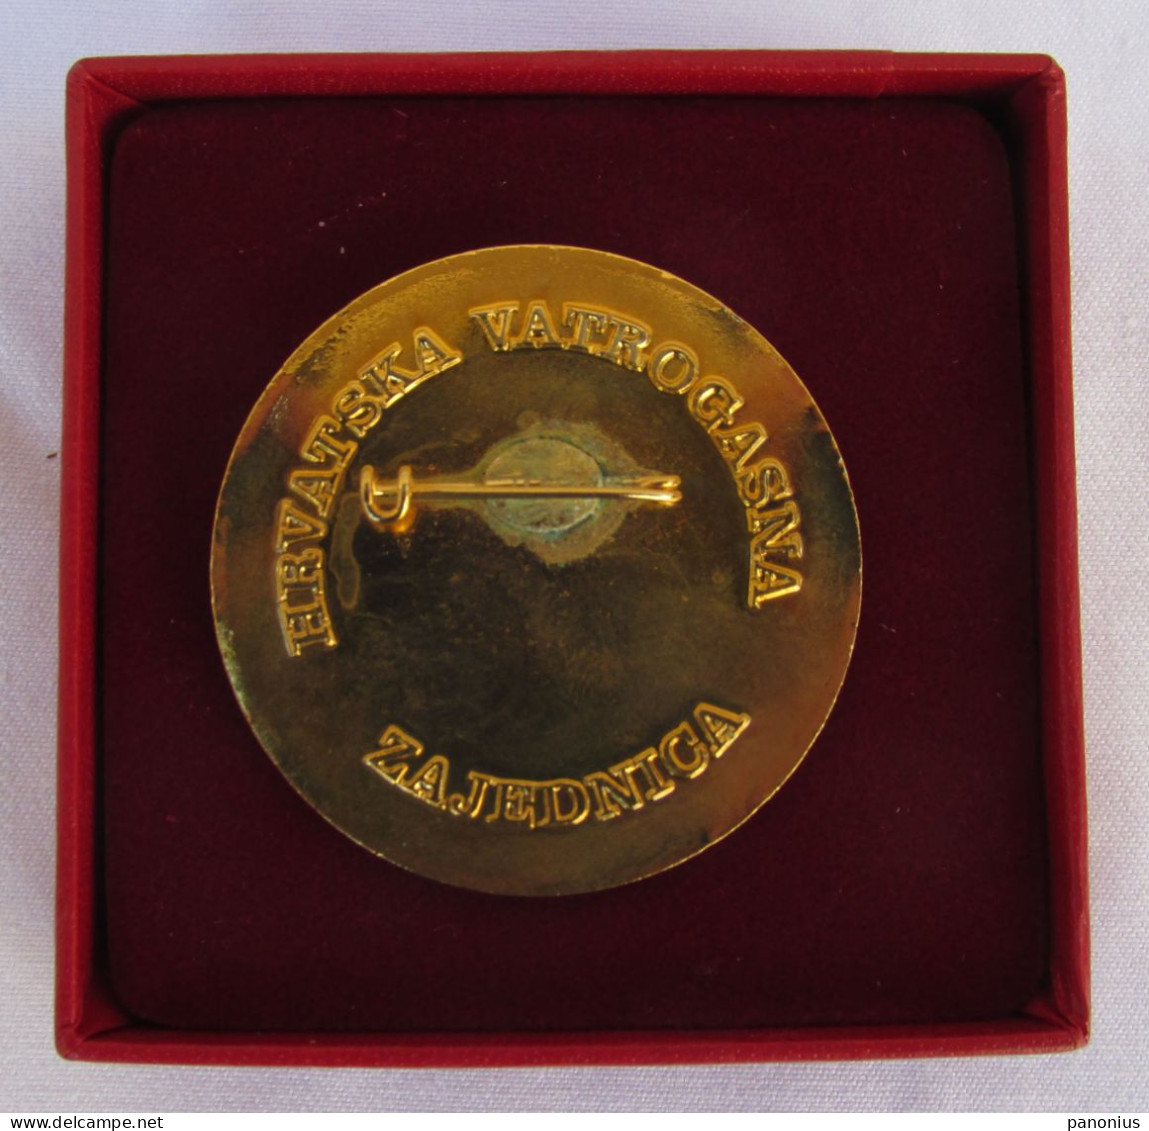 Firemen Bomberos - Croatia Federation Order / Medal With Box, Enamel - Feuerwehr